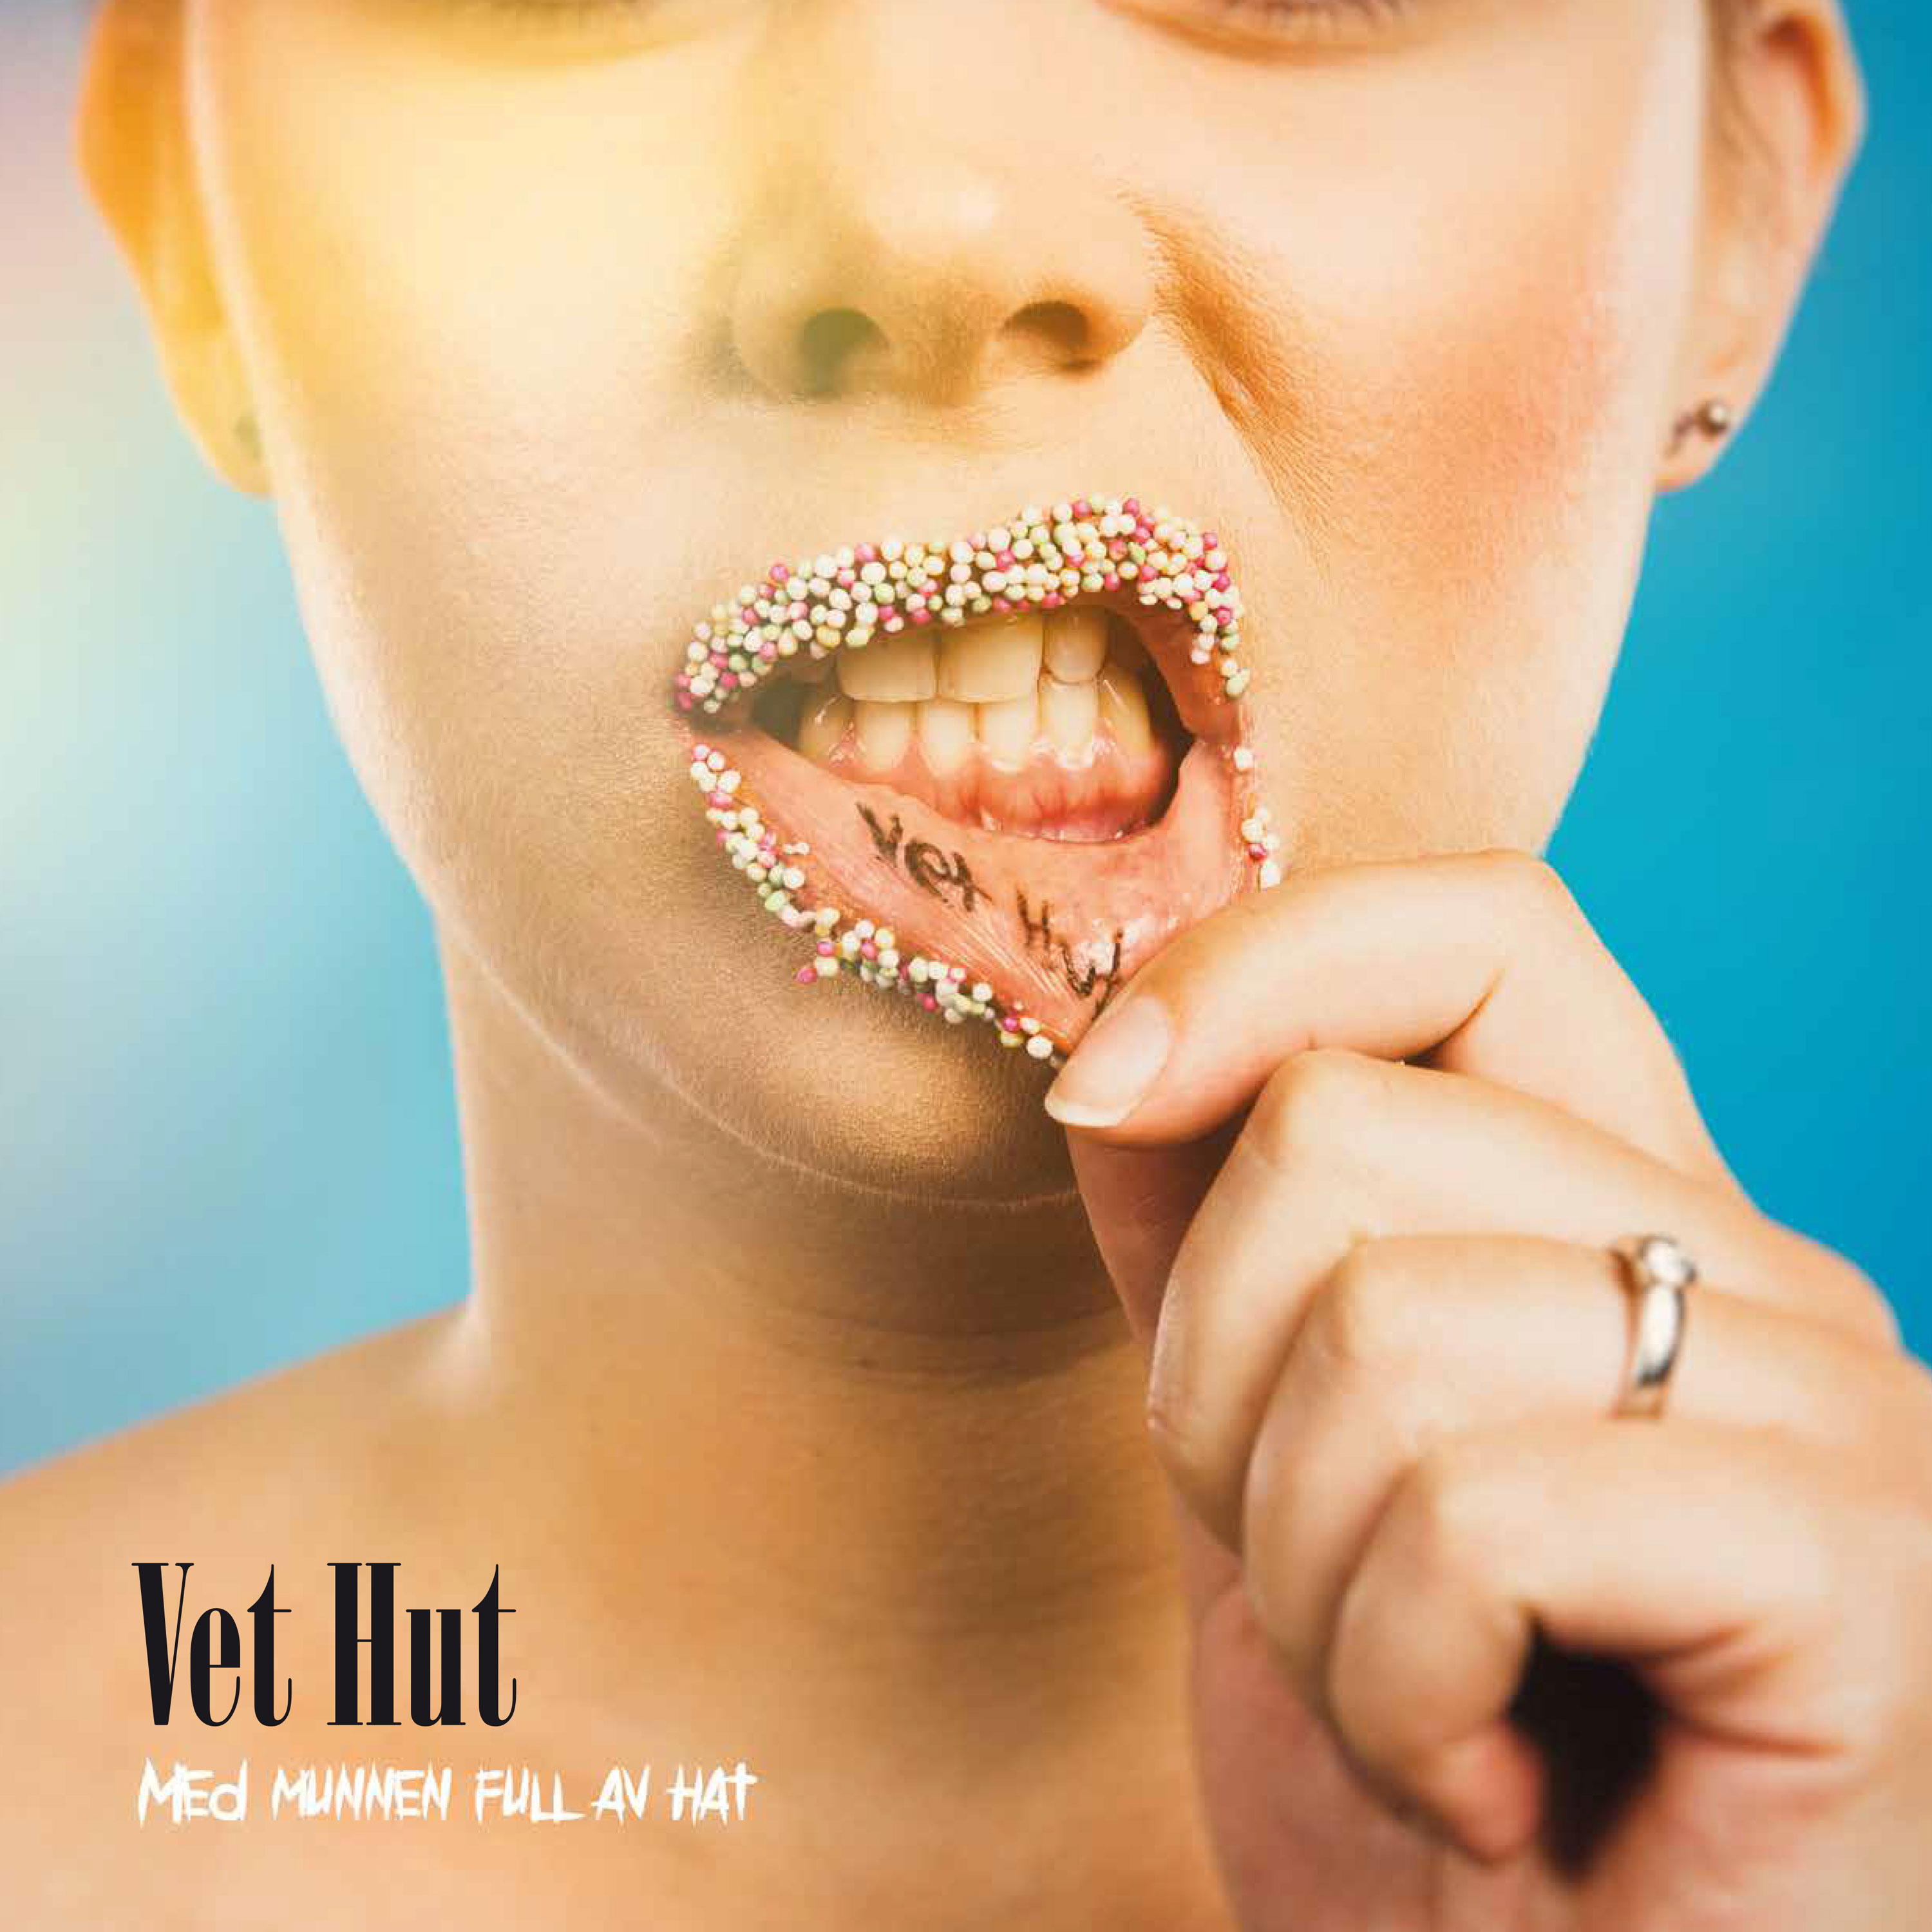 Vet-hut-med-munnen-full-av-hat-digitalt-omslag-3000x3000